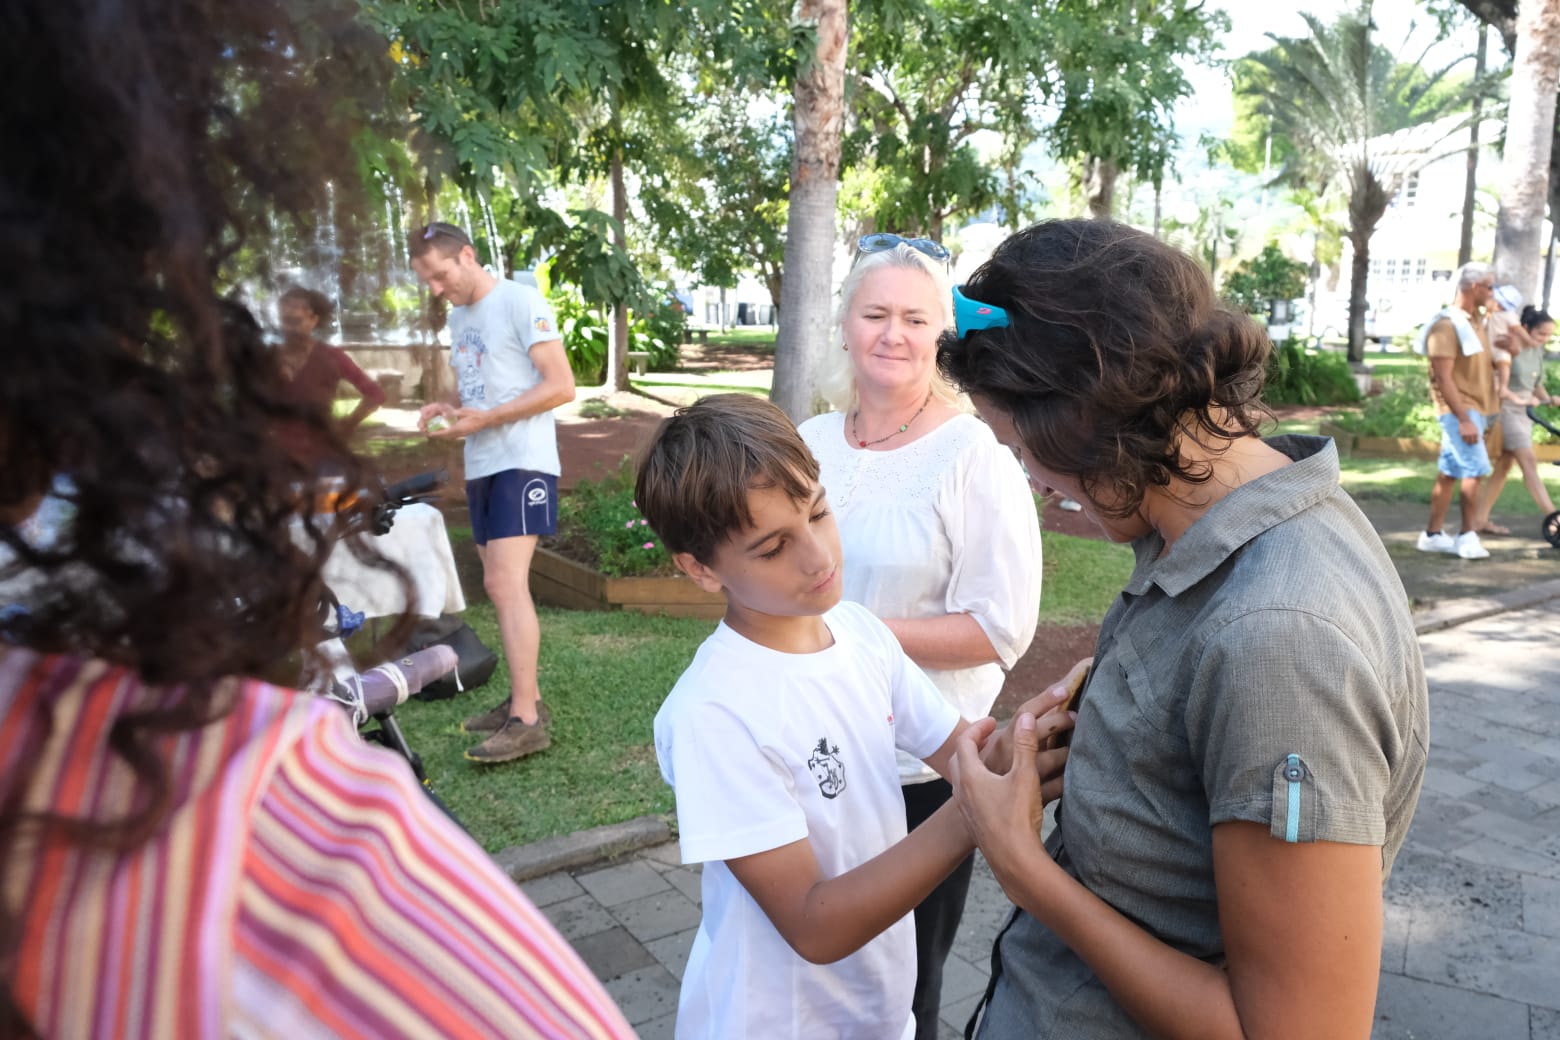 Saint-Paul accueille une étape du tour de l’île à vélo réalisé par Mélodie MARTINEAU, et ses deux fils de 8 et 10 ans, pour sensibiliser à l’autisme.